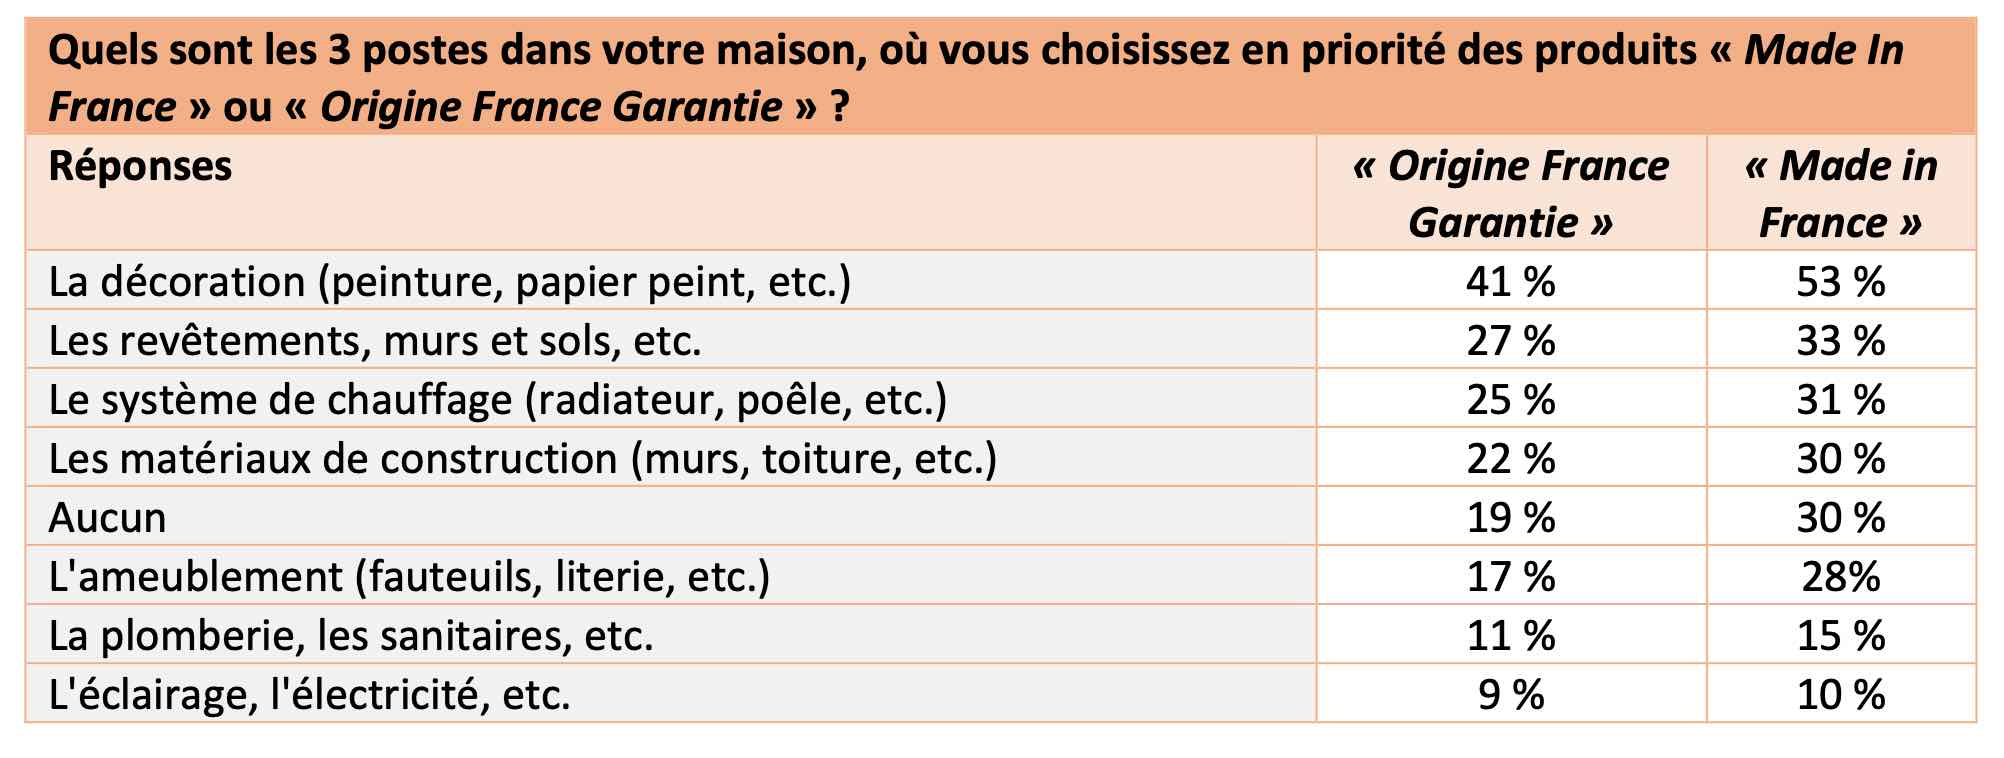 Priorités des Français en matières d'achats de produits labellisés « Made in France » et « Origine France Garantie » - Source : Rothelec